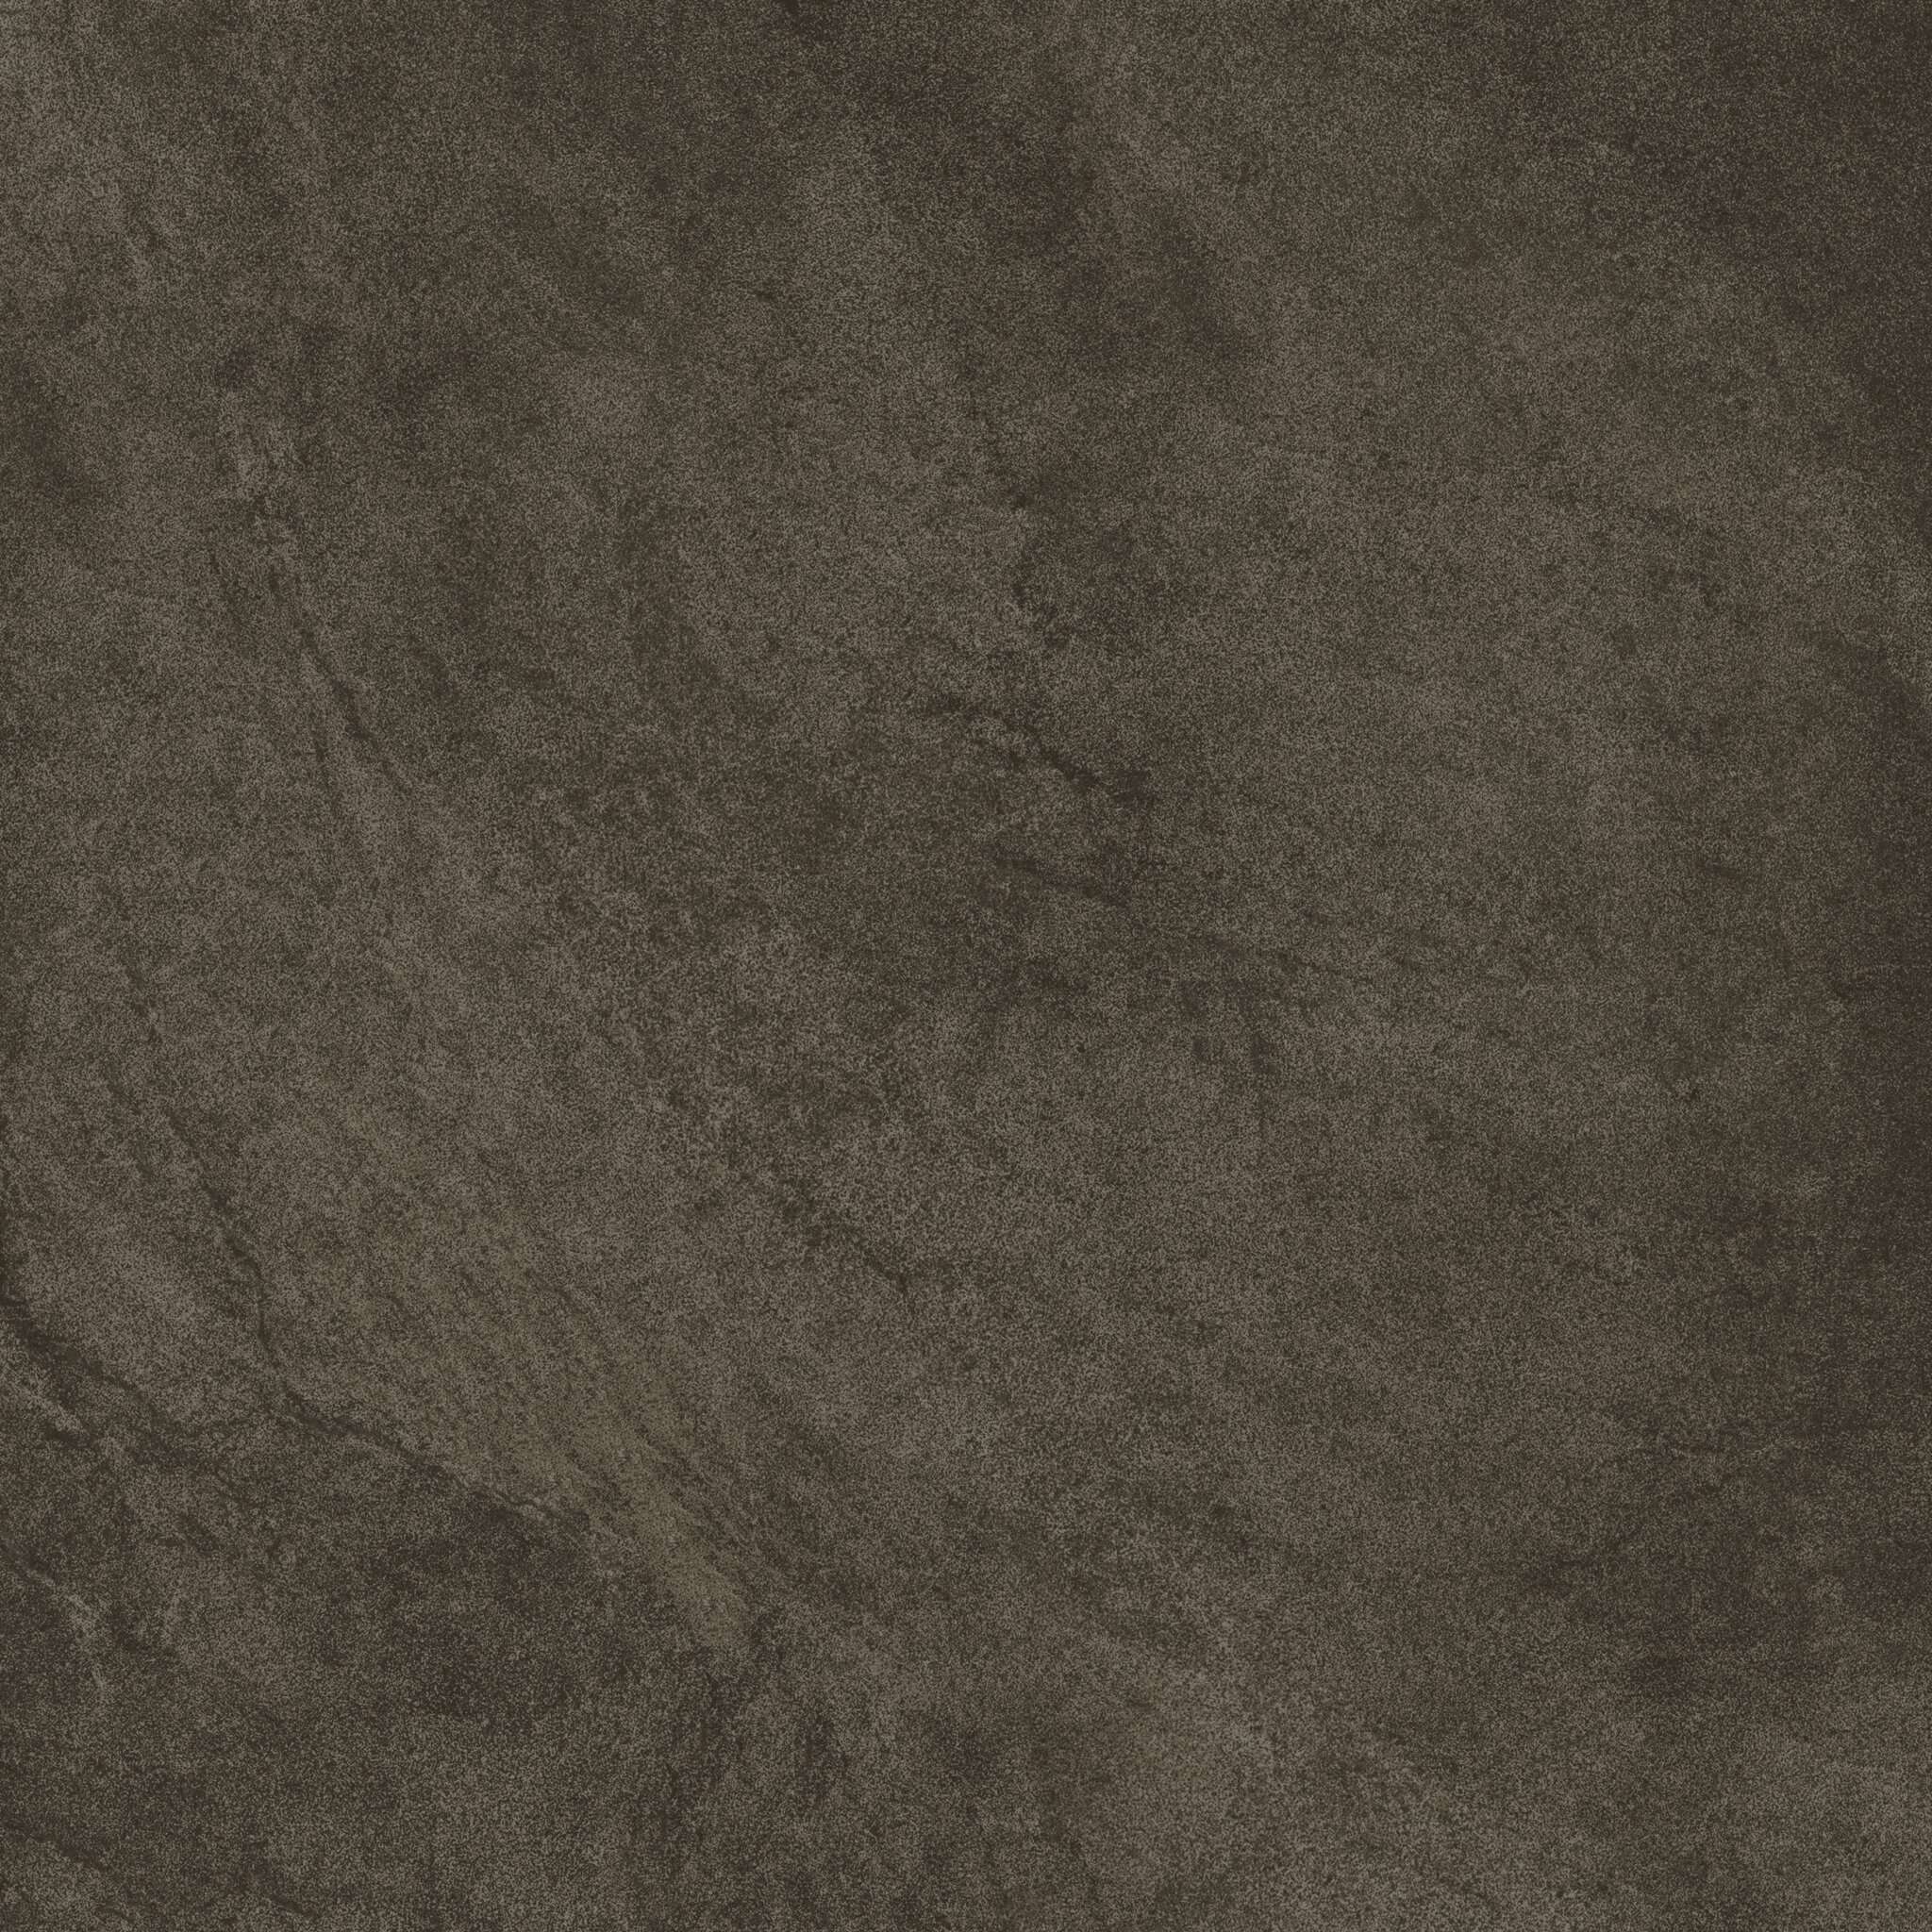 Agrob Buchtal Valley Boden-/Wandfliese erdbraun 60x60cm